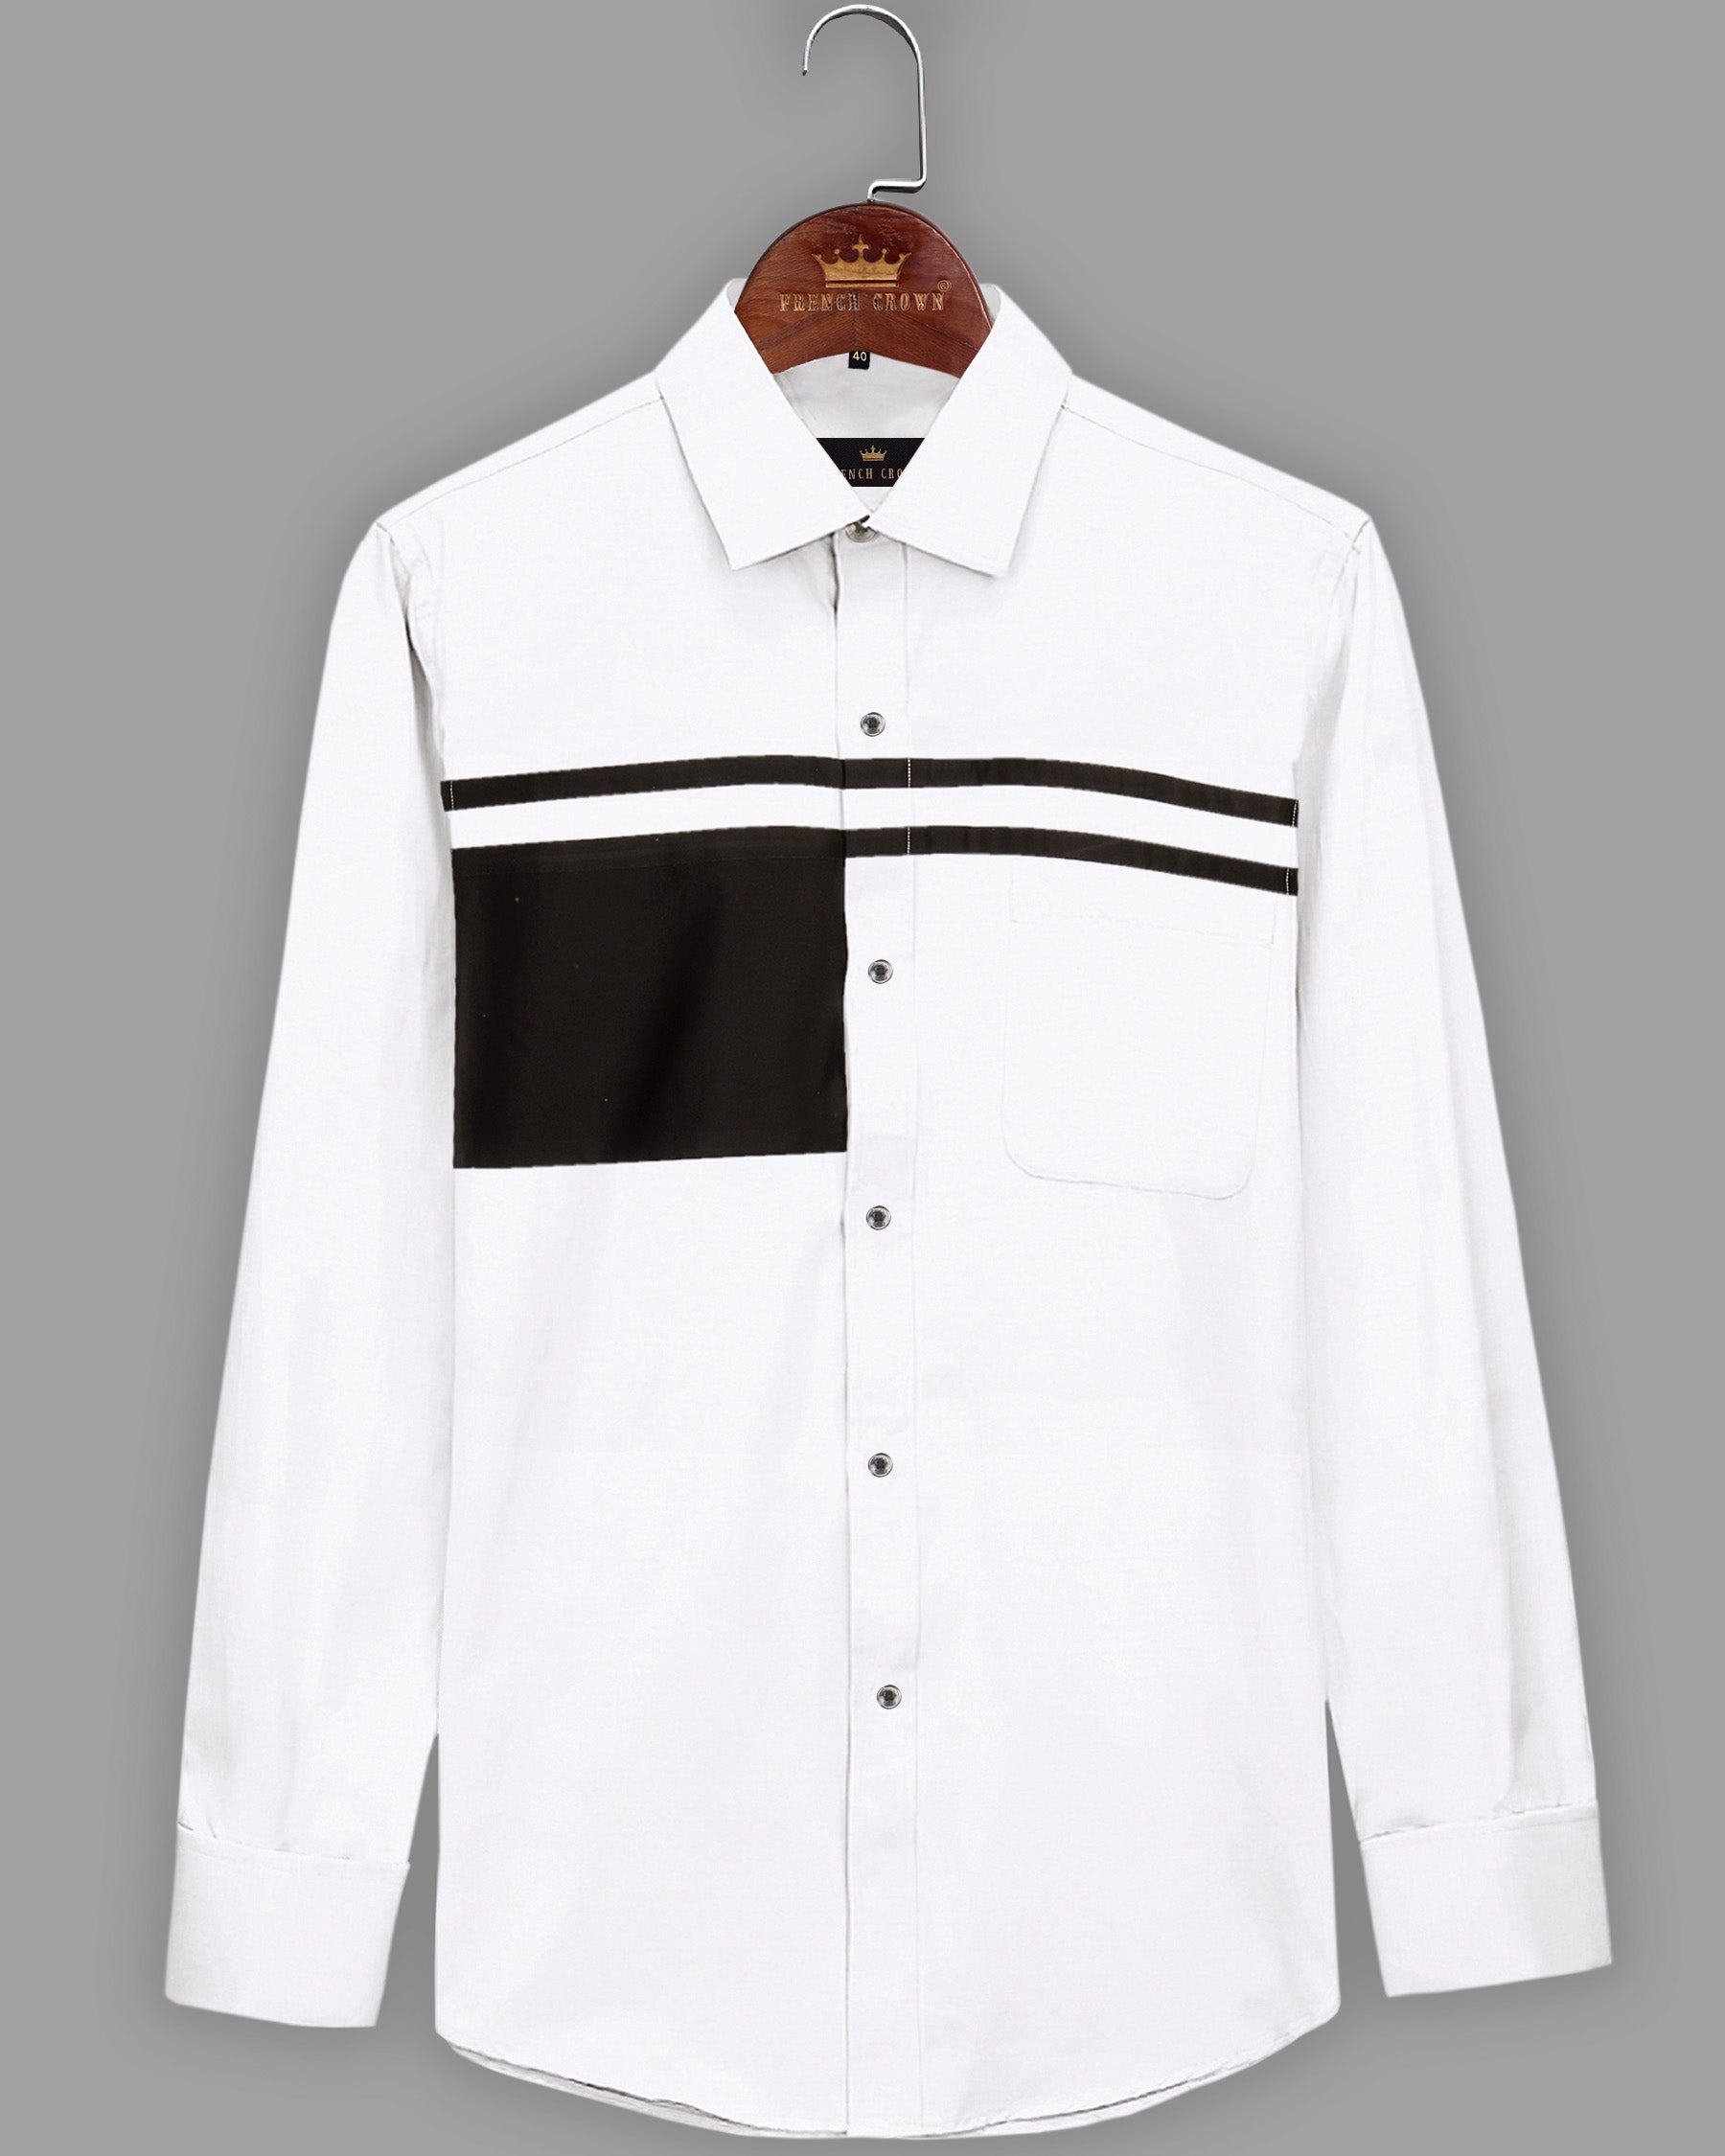 Bright White Subtle Sheen Patterned Chest Super Soft Giza Cotton Shirt 2096BLK-P8-38, 2096BLK-P8-H-38, 2096BLK-P8-39, 2096BLK-P8-H-39, 2096BLK-P8-40, 2096BLK-P8-H-40, 2096BLK-P8-42, 2096BLK-P8-H-42, 2096BLK-P8-44, 2096BLK-P8-H-44, 2096BLK-P8-46, 2096BLK-P8-H-46, 2096BLK-P8-48, 2096BLK-P8-H-48, 2096BLK-P8-50, 2096BLK-P8-H-50, 2096BLK-P8-52, 2096BLK-P8-H-52